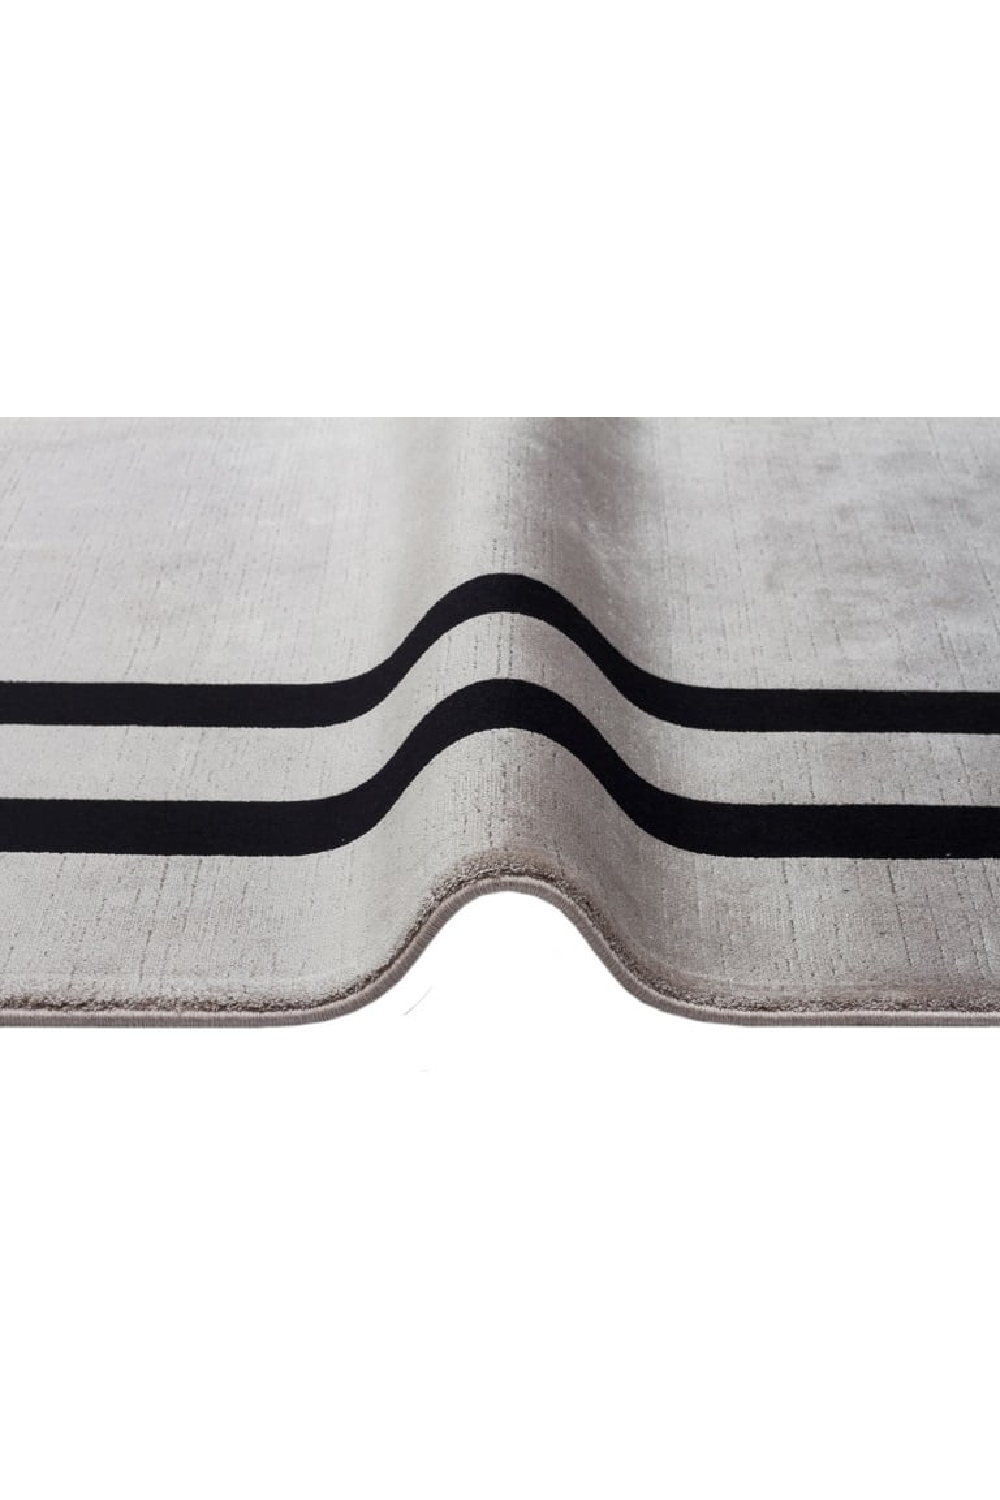 Gray Viscose Contemporary Rug 6'5" x 10 | OROA Tula | Oroa.com